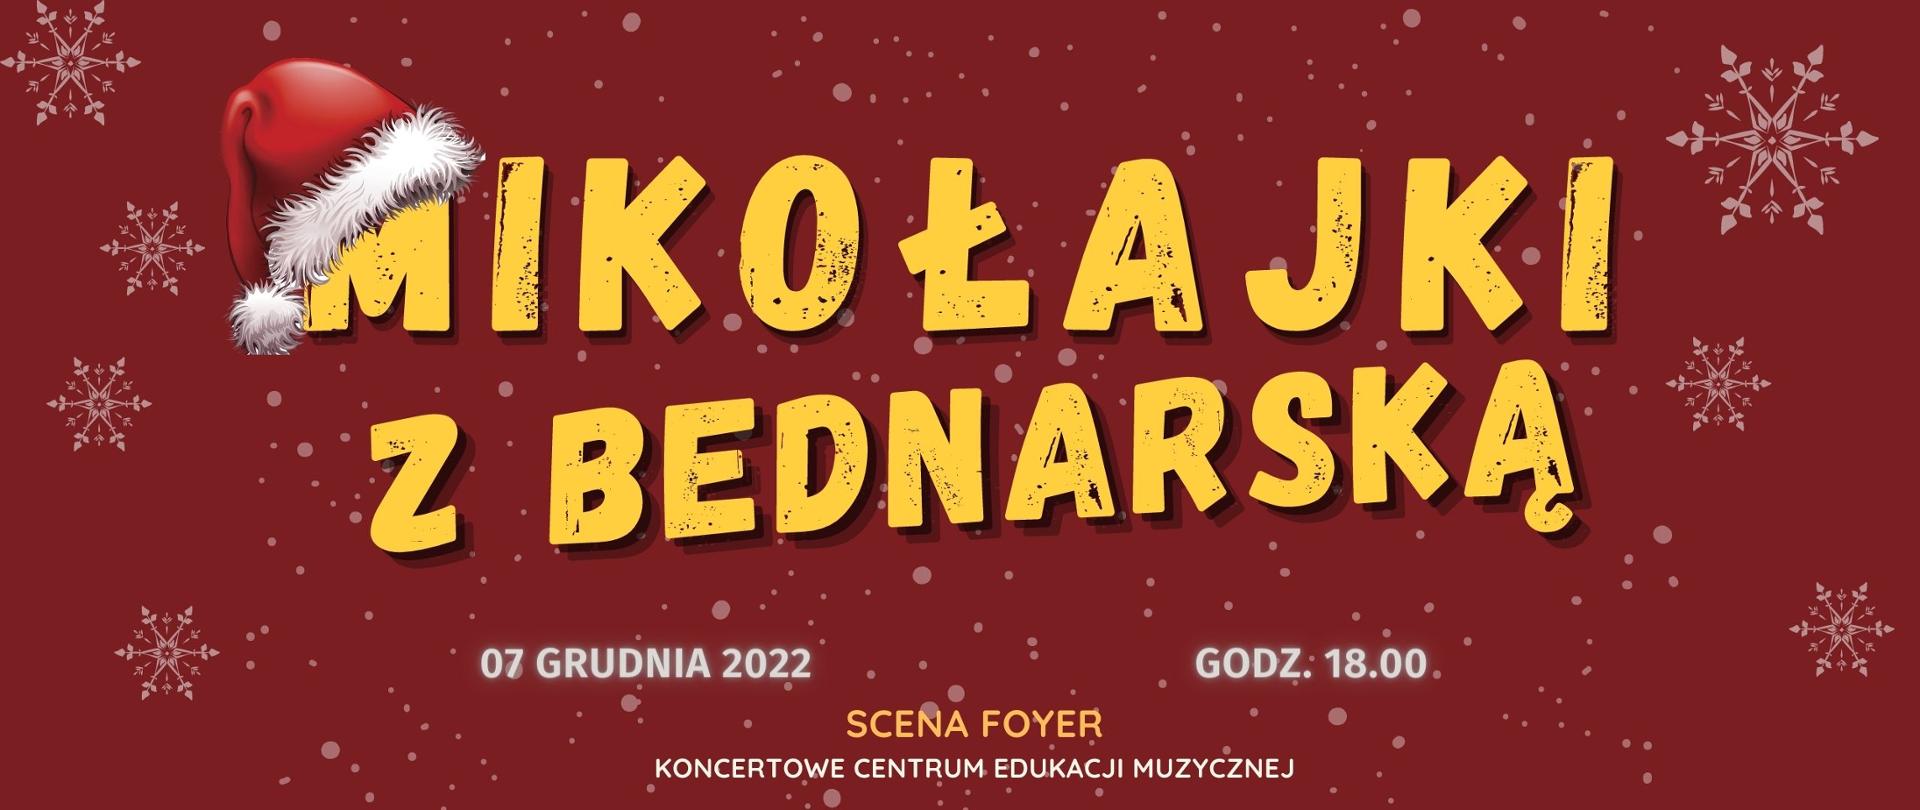 Afisz- na bordowym tle napis "Mikołajki z Bednarską", 7 grudnia 202, godz. 18.00, Scena Foyer, Koncertowe Centrum Edukacji Muzycznej